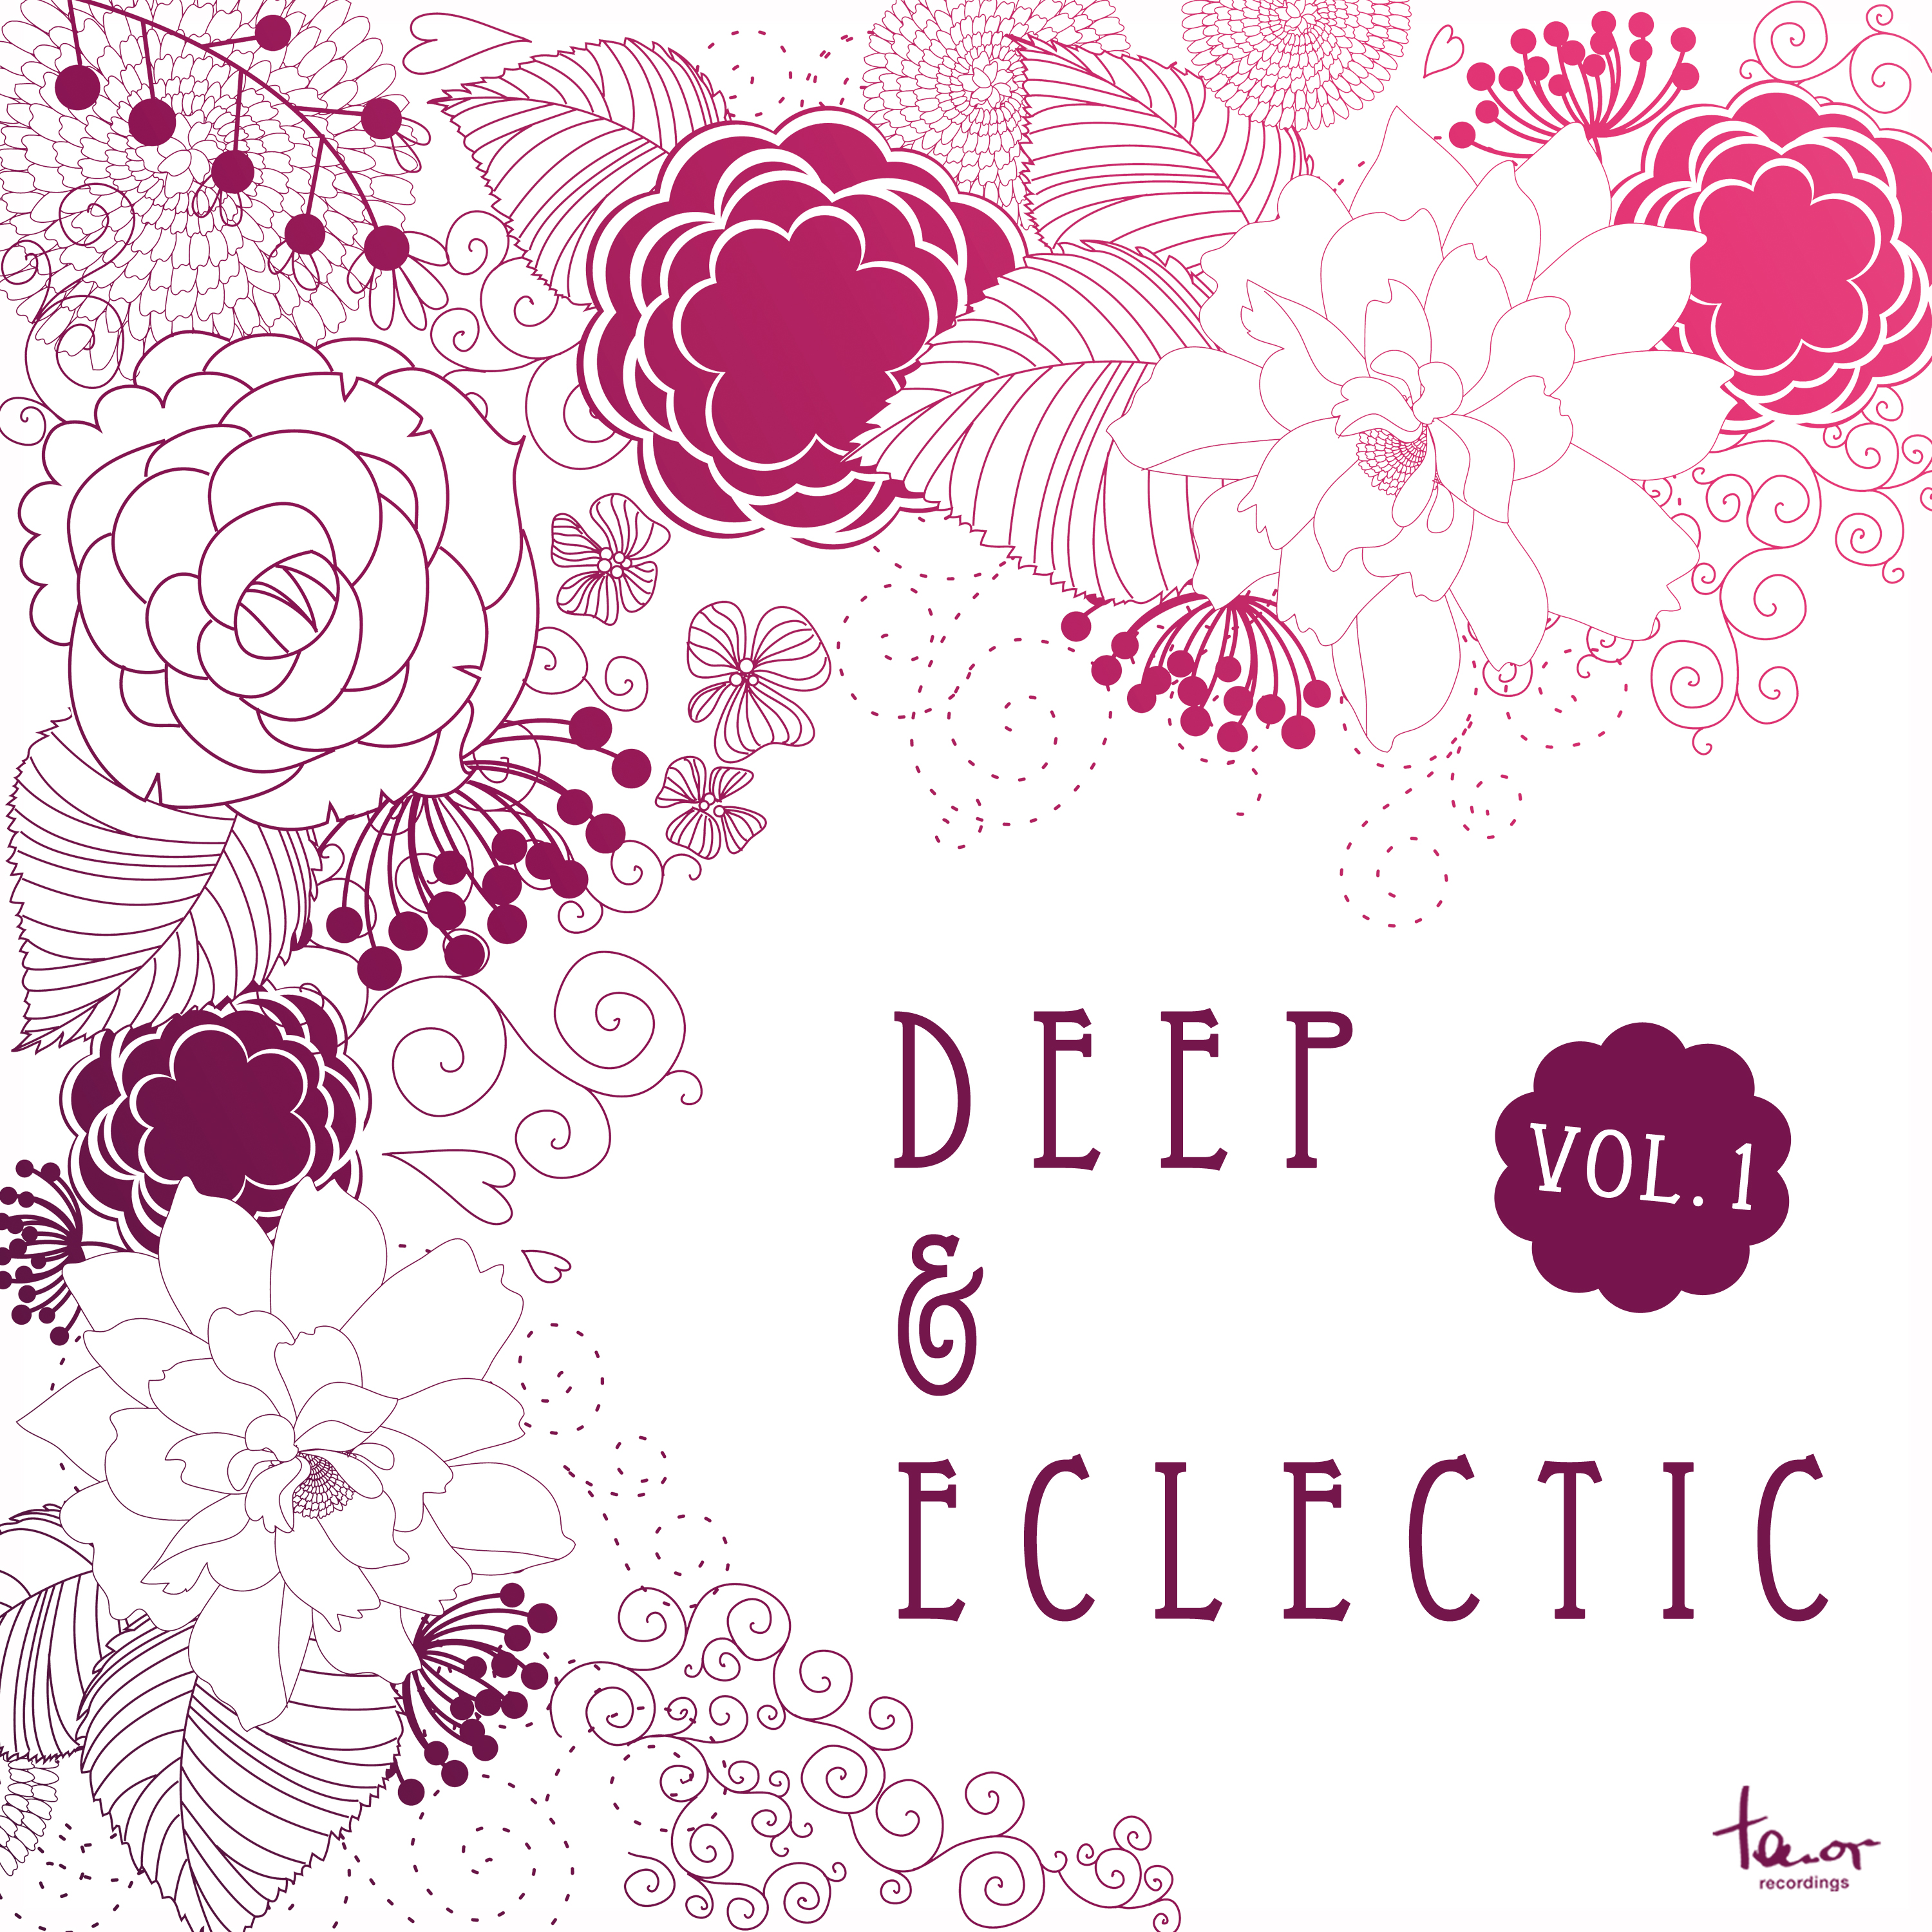 Deep & Eclectic, Vol. 1